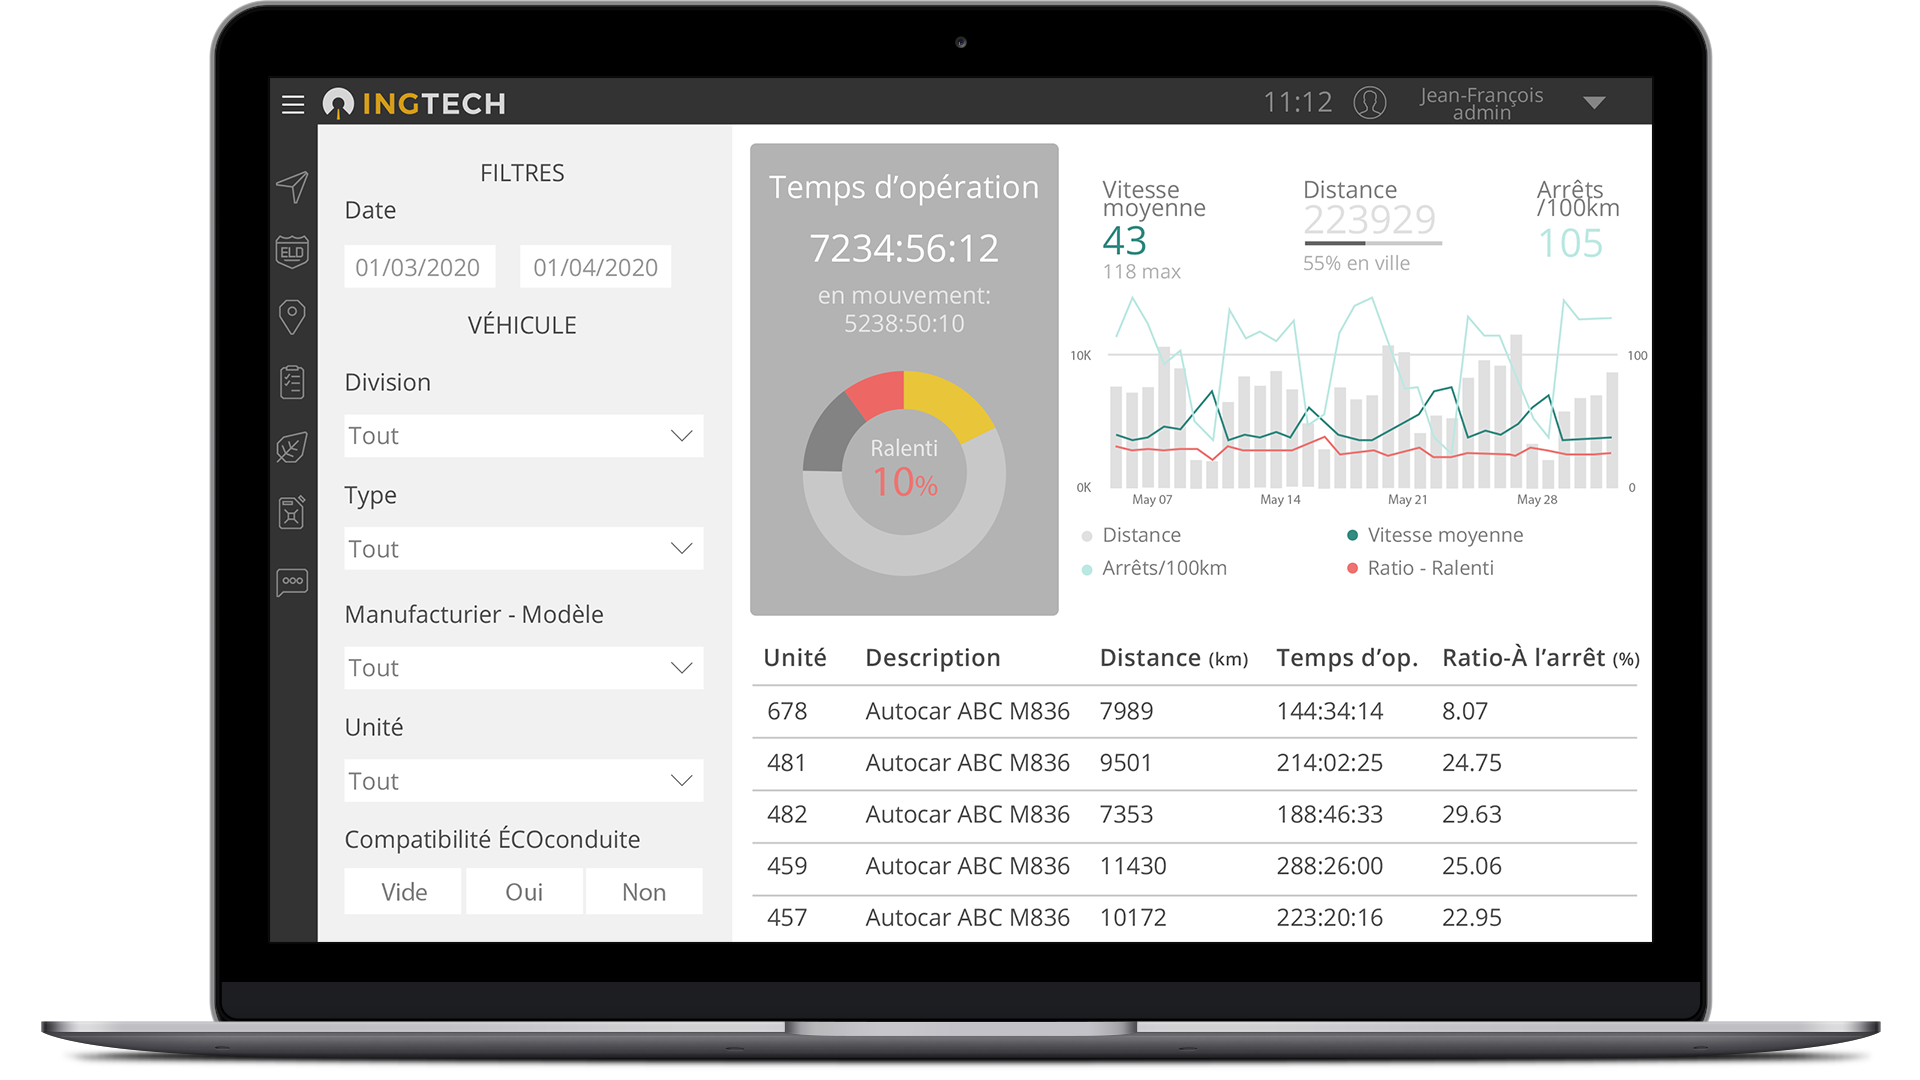 dashboard screenshot from INGTech's platform